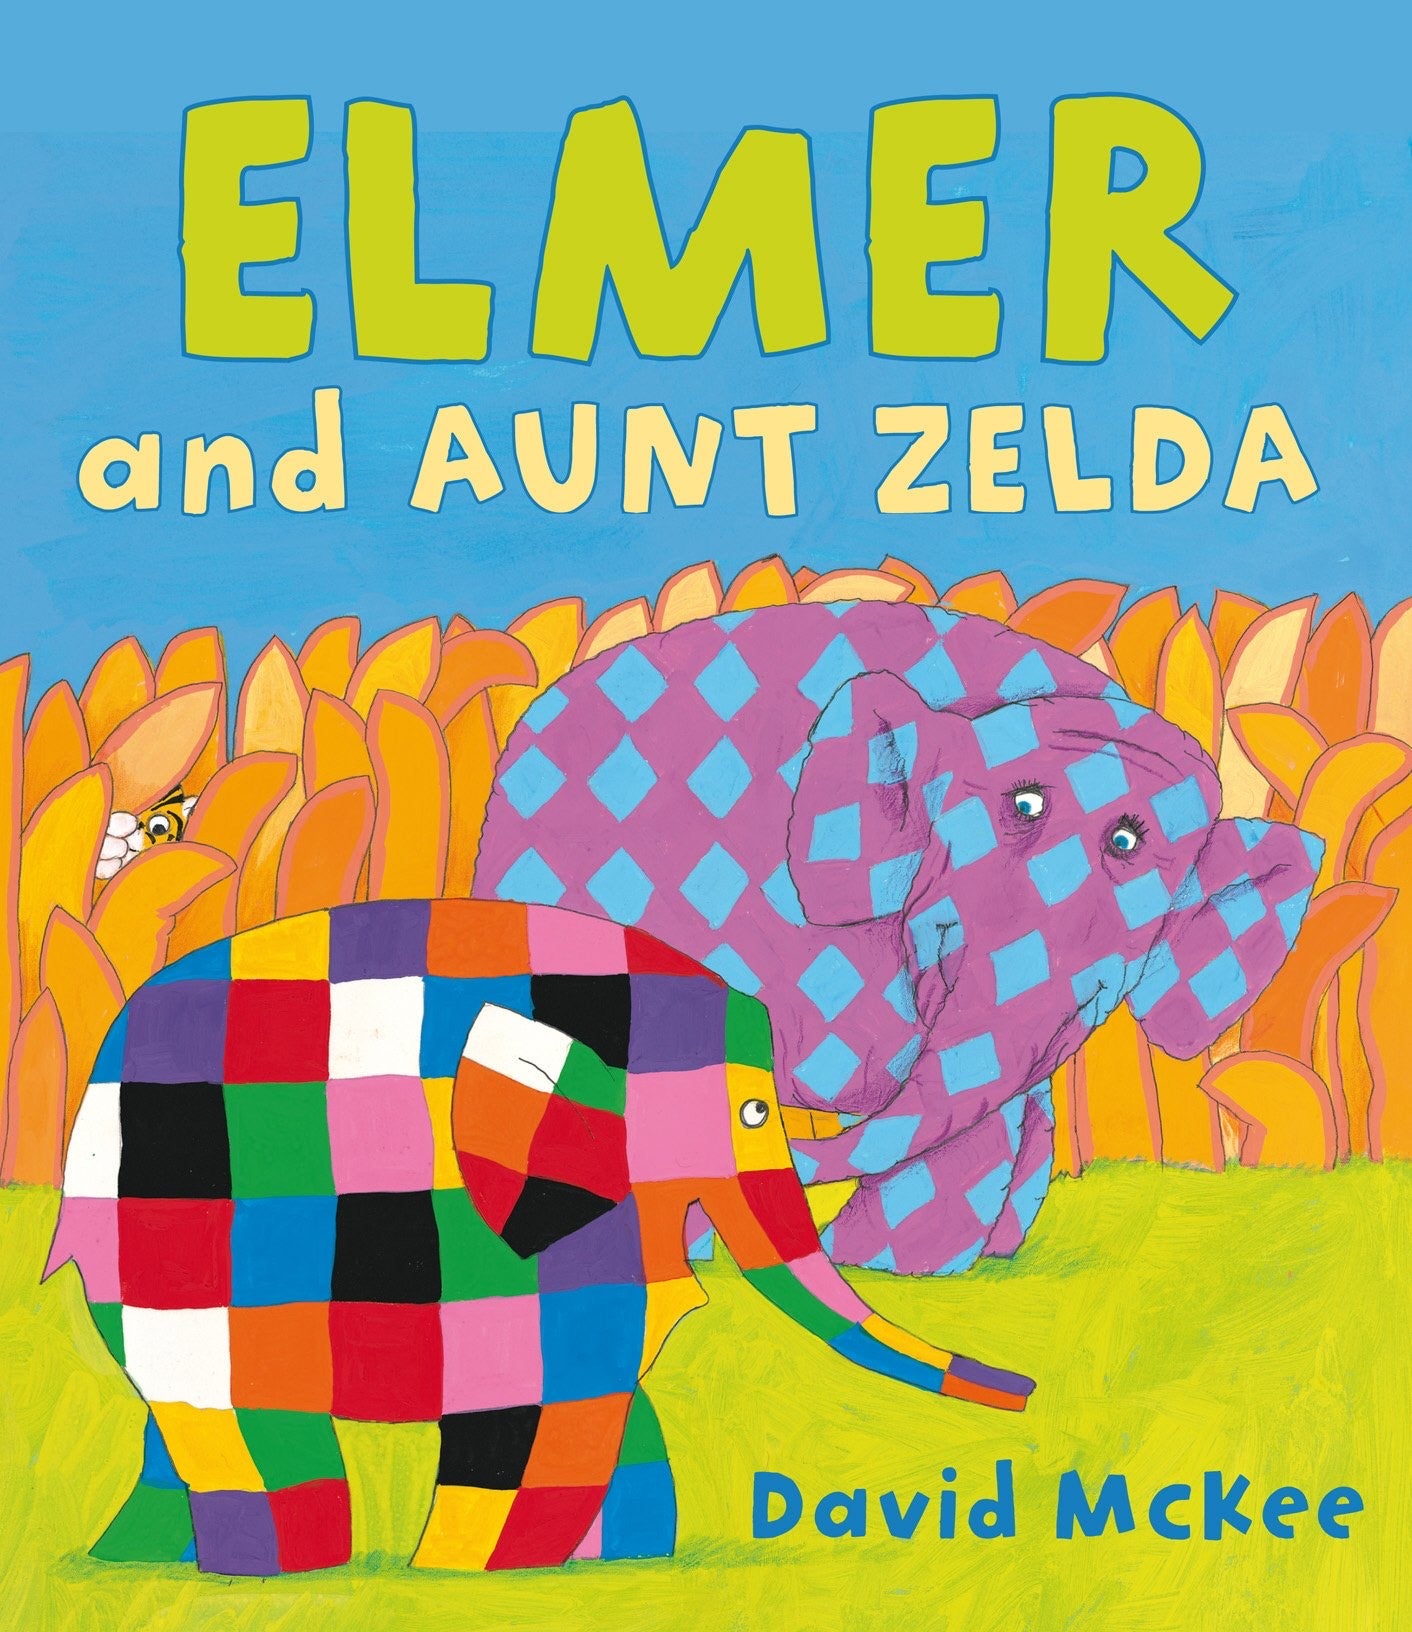 Elmer and Aunt Zelda by David McKee